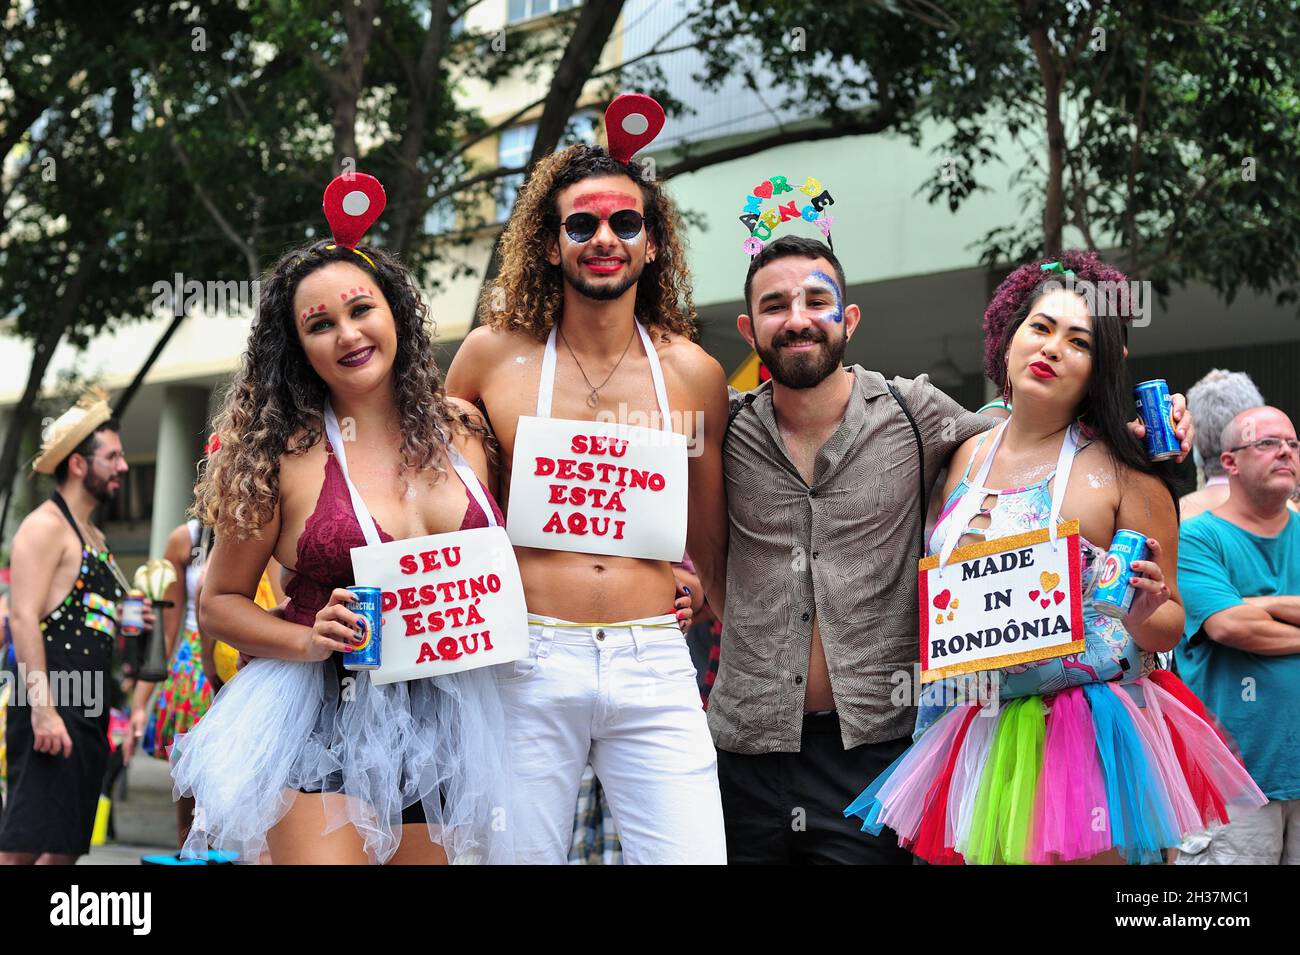 Americhe, Brasile – 22 febbraio 2020: Amici in costume sorridono per la fotocamera durante una festa di strada di Carnevale che si tiene nel centro di Rio de Janeiro. Foto Stock